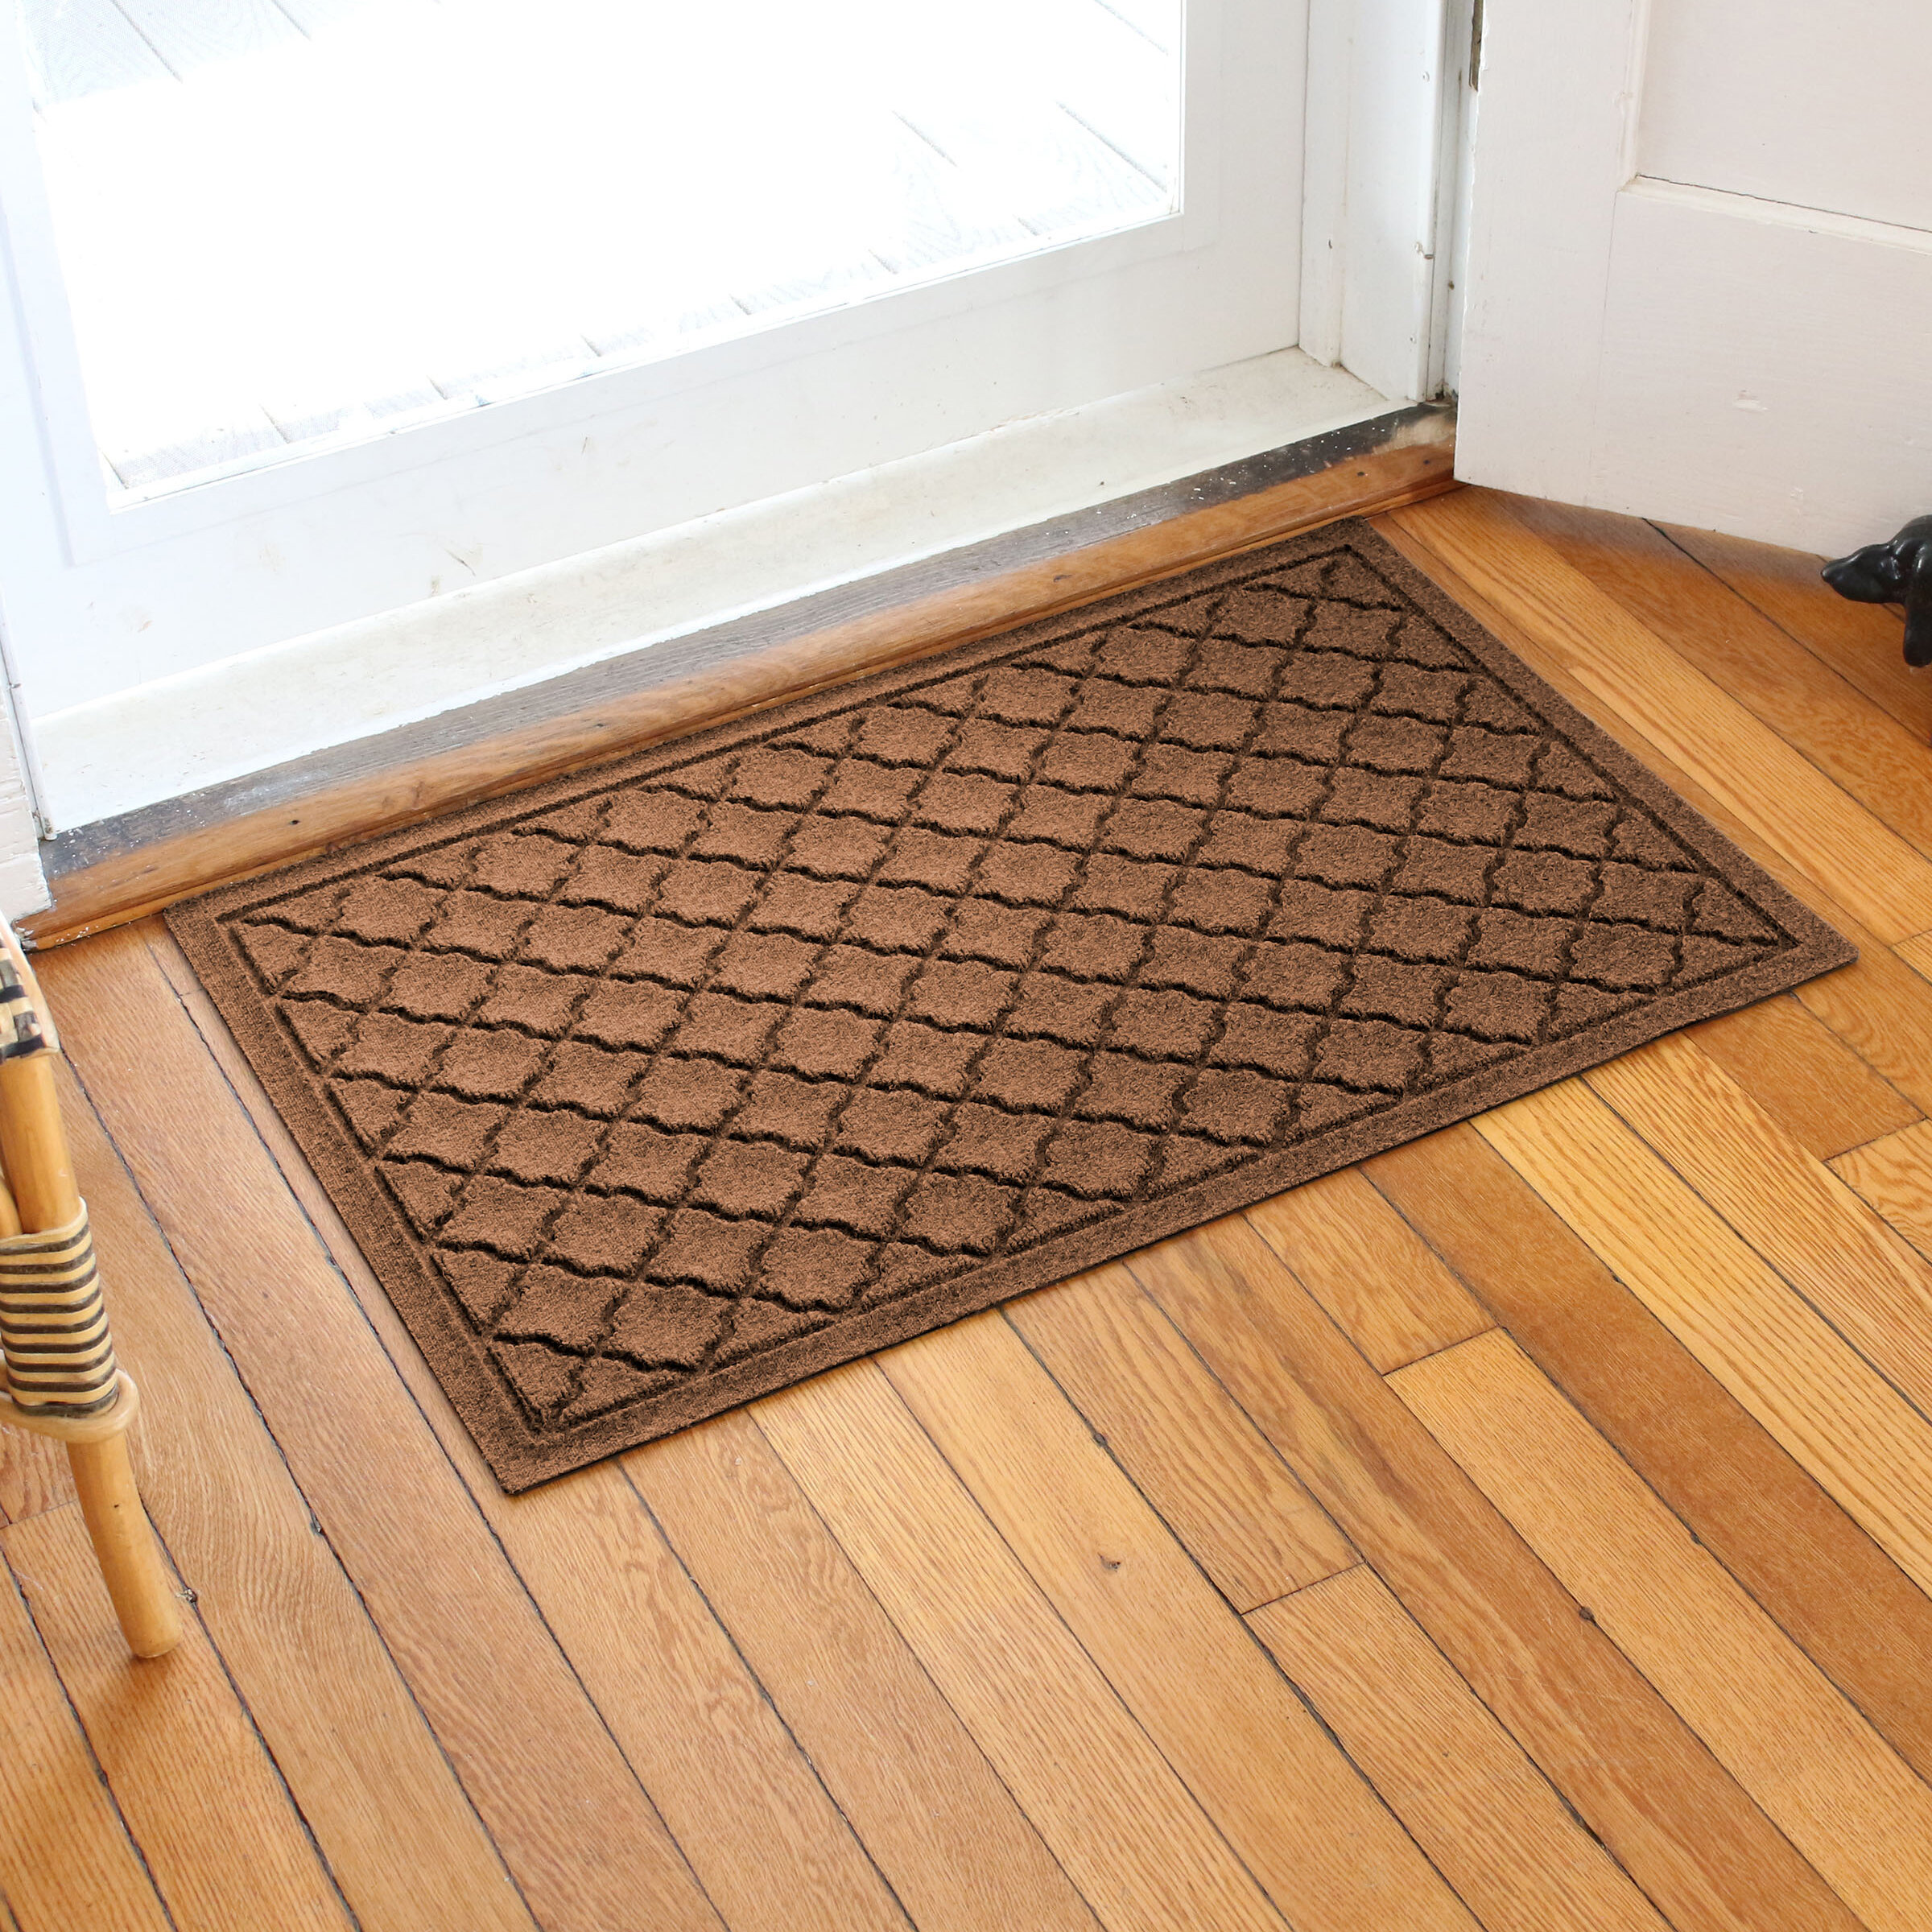 Buy Indoor Doormats Online